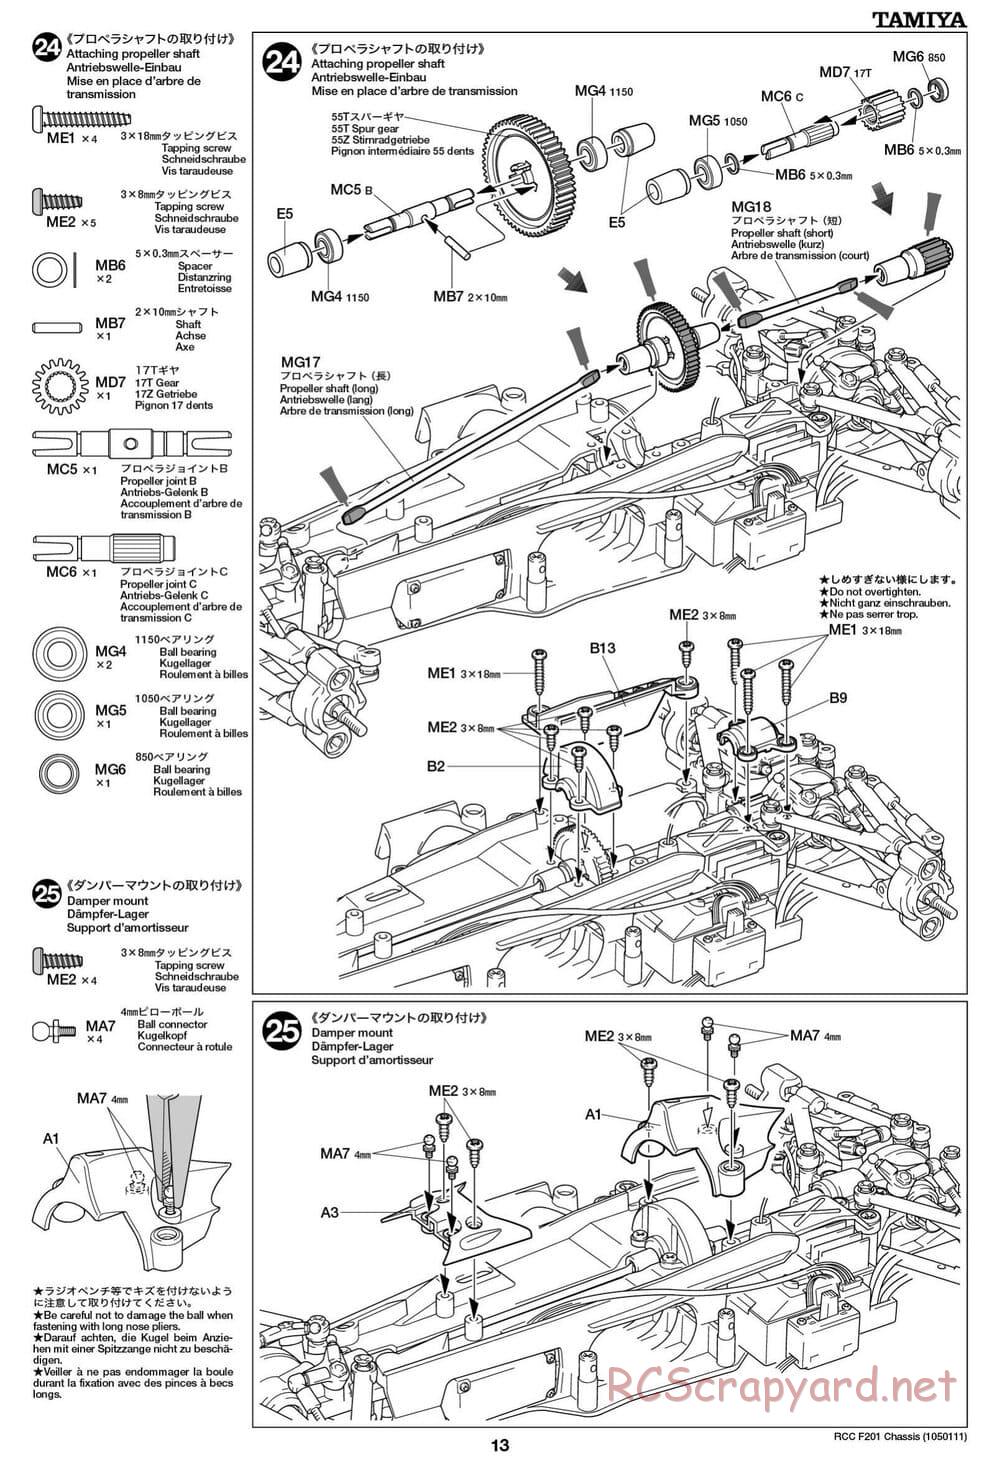 Tamiya - F201 Chassis - Manual - Page 13